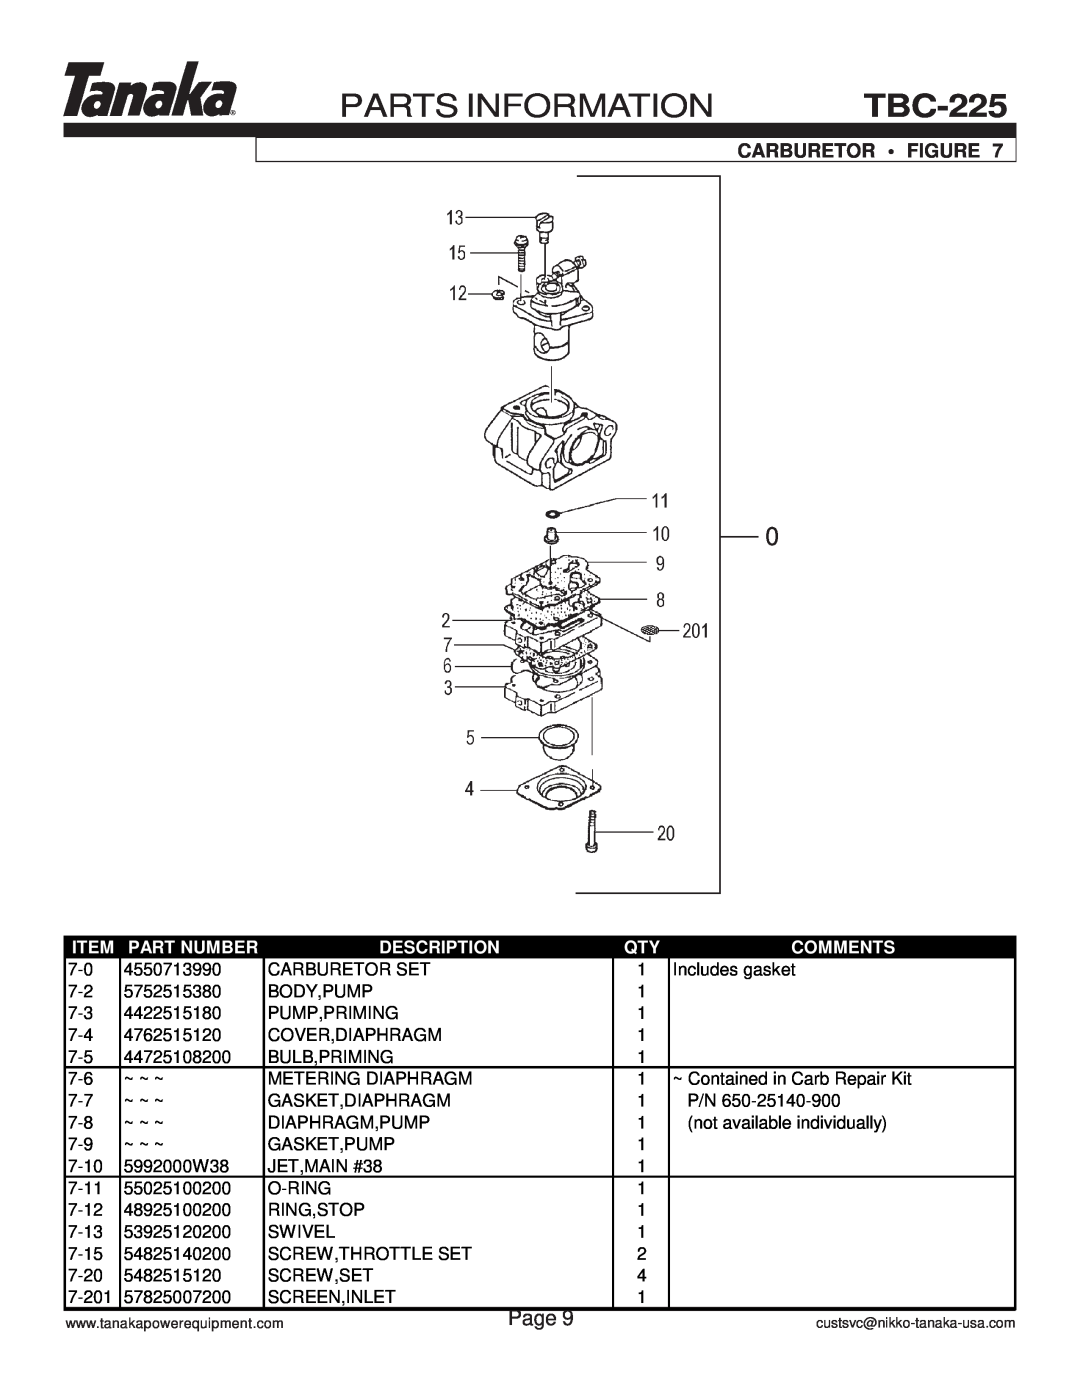 Tanaka TBC-225 manual Parts Information, Page, Carburetor Figure, Part Number, Description, Comments 